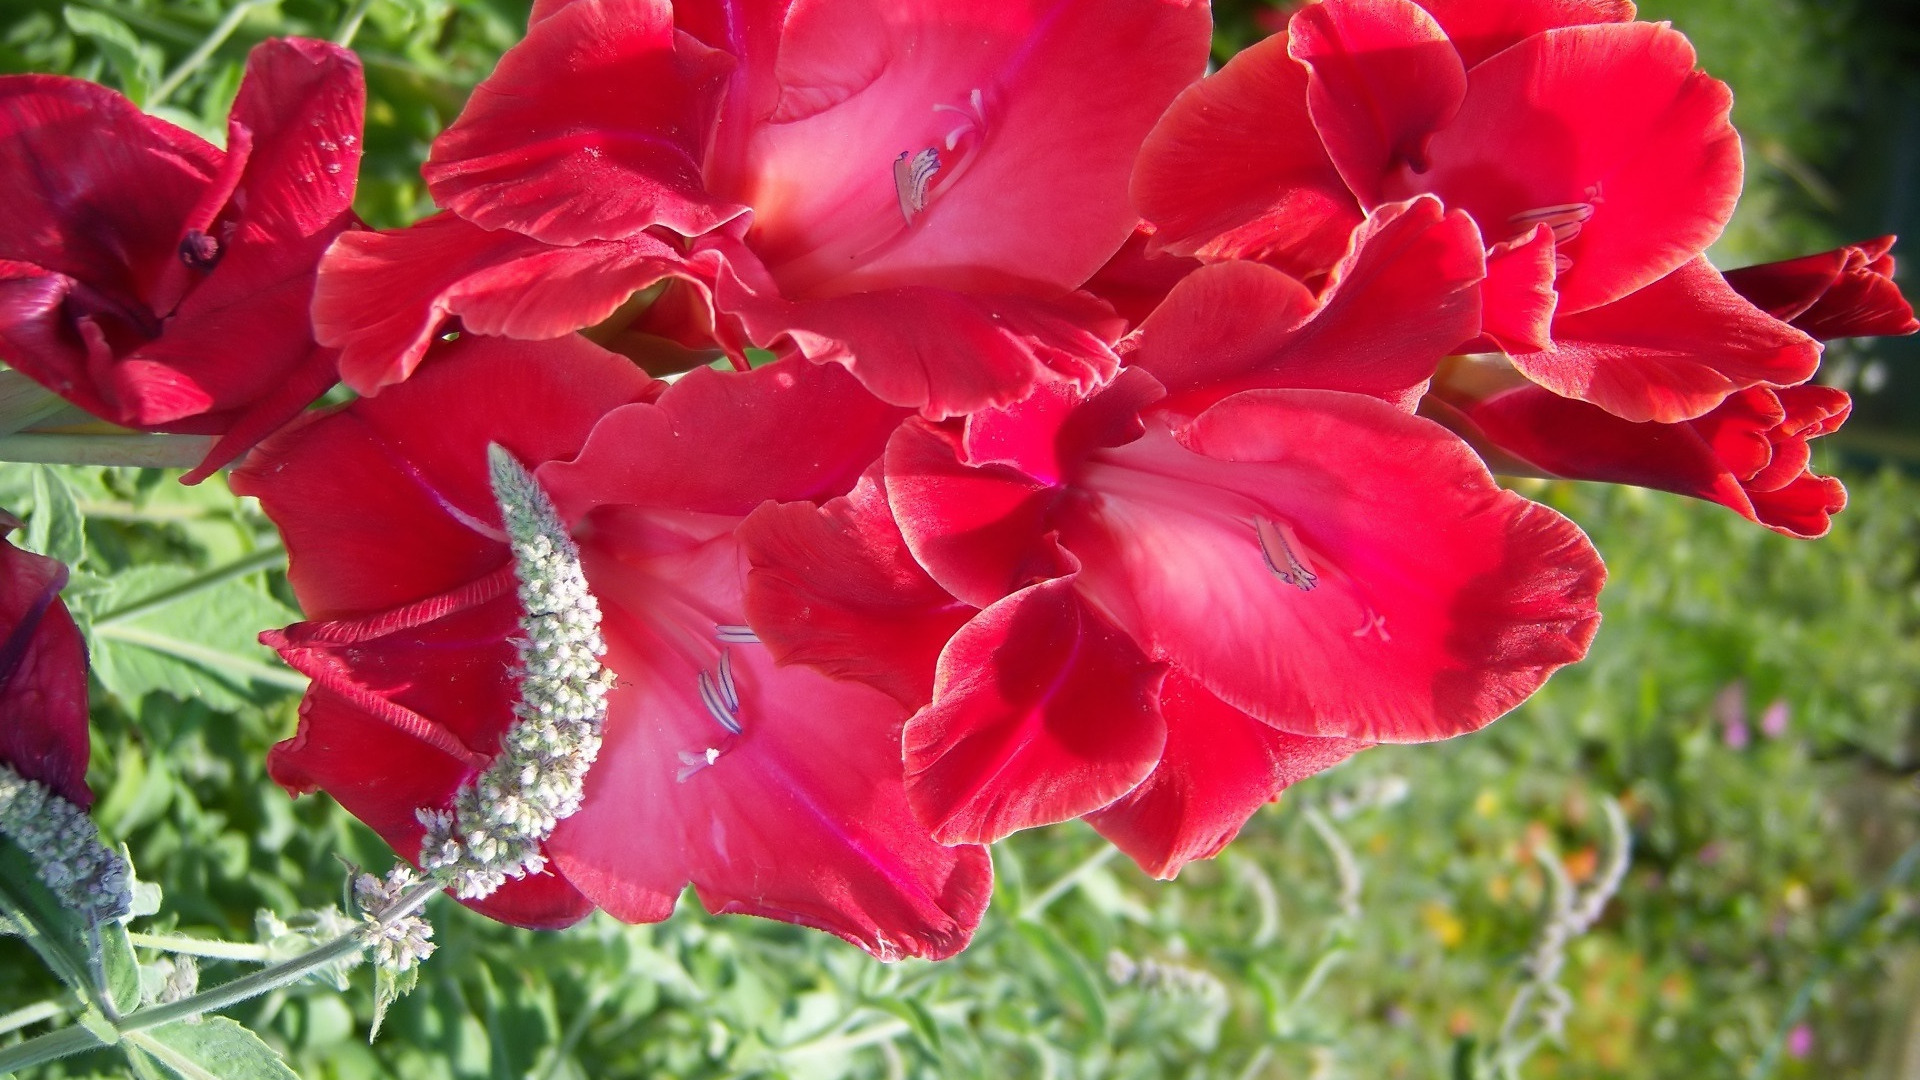 Hình ảnh hoa lay ơn đỏ trong nắng tuyệt đẹp